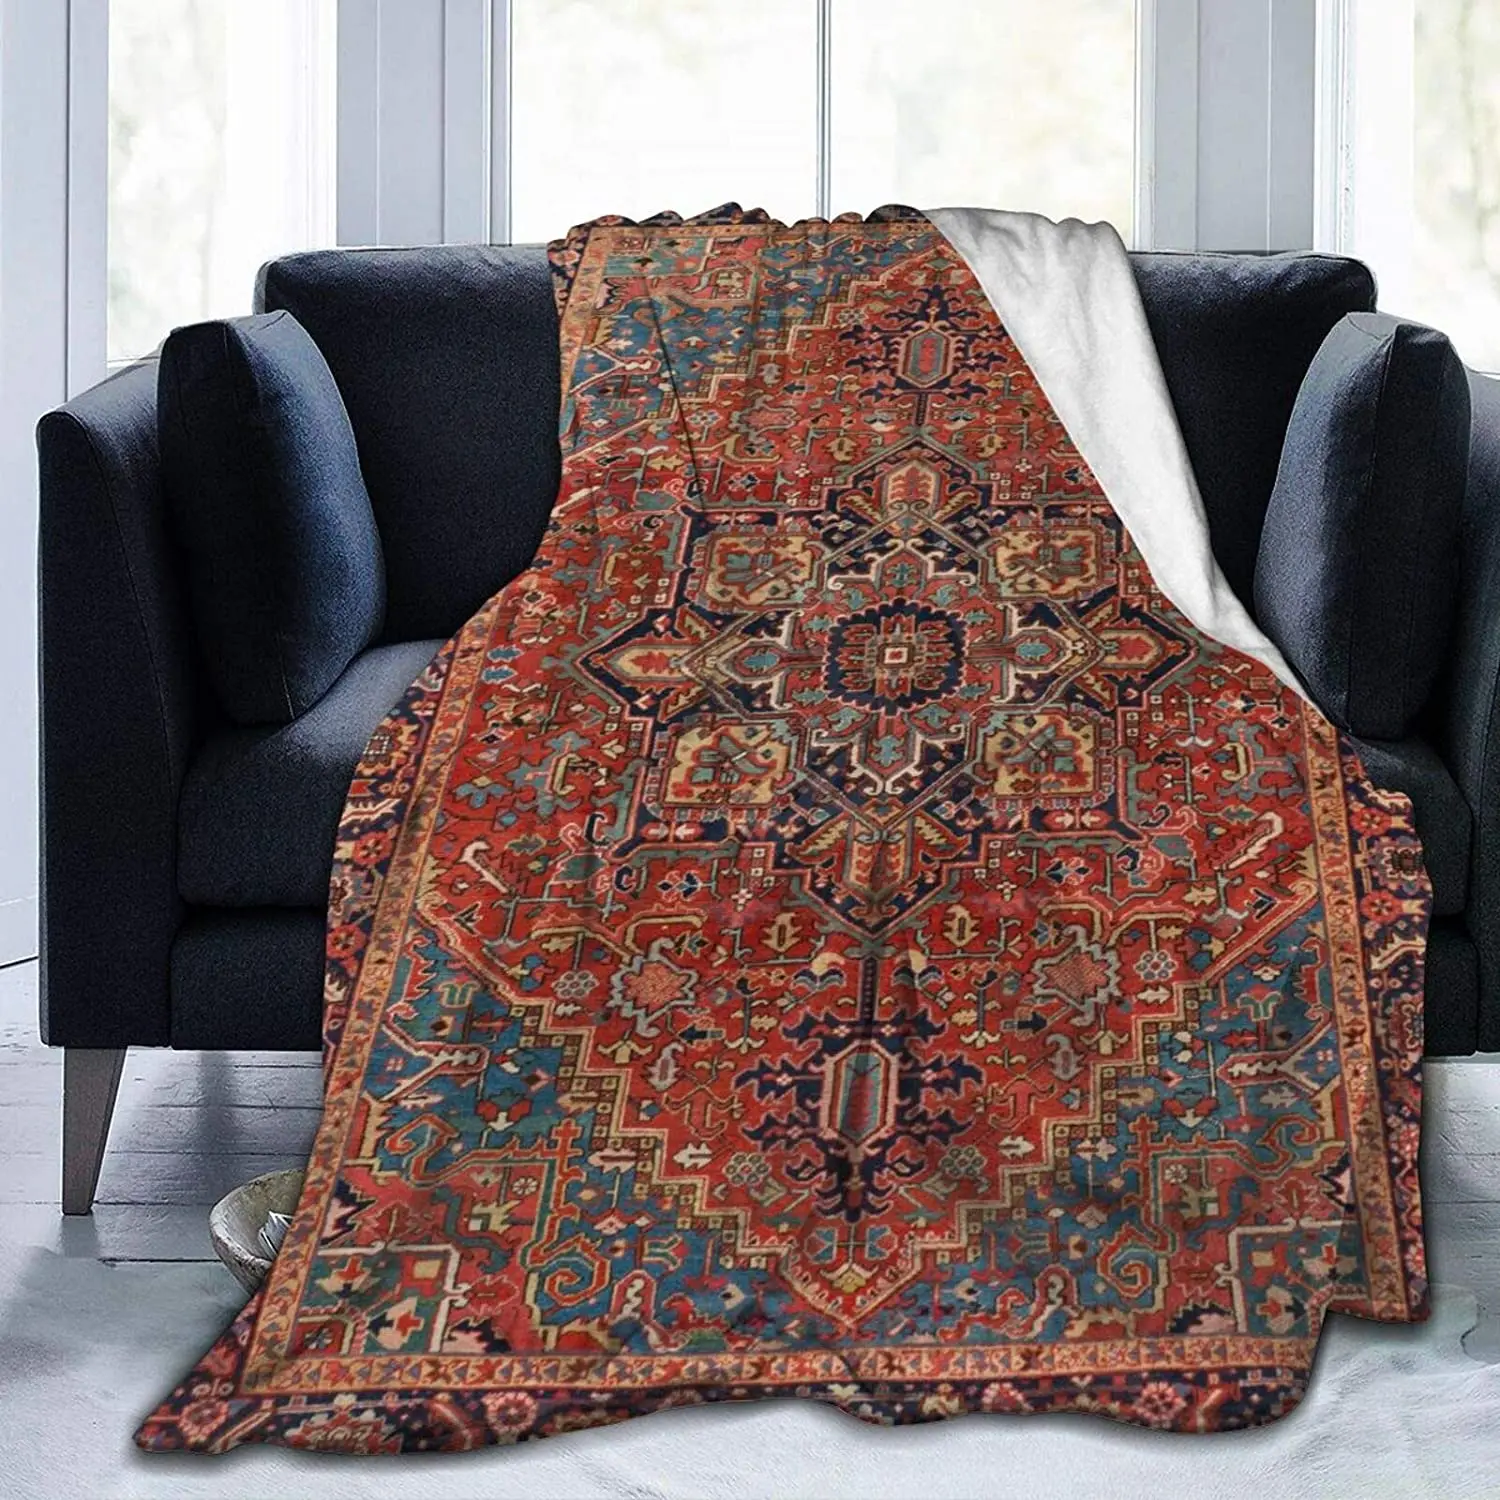 

Античное курдское Северо-Западное персидское одеяло, винтажное Фланелевое Флисовое одеяло для детей, подростков и взрослых, мягкое уютное теплое пушистое одеяло